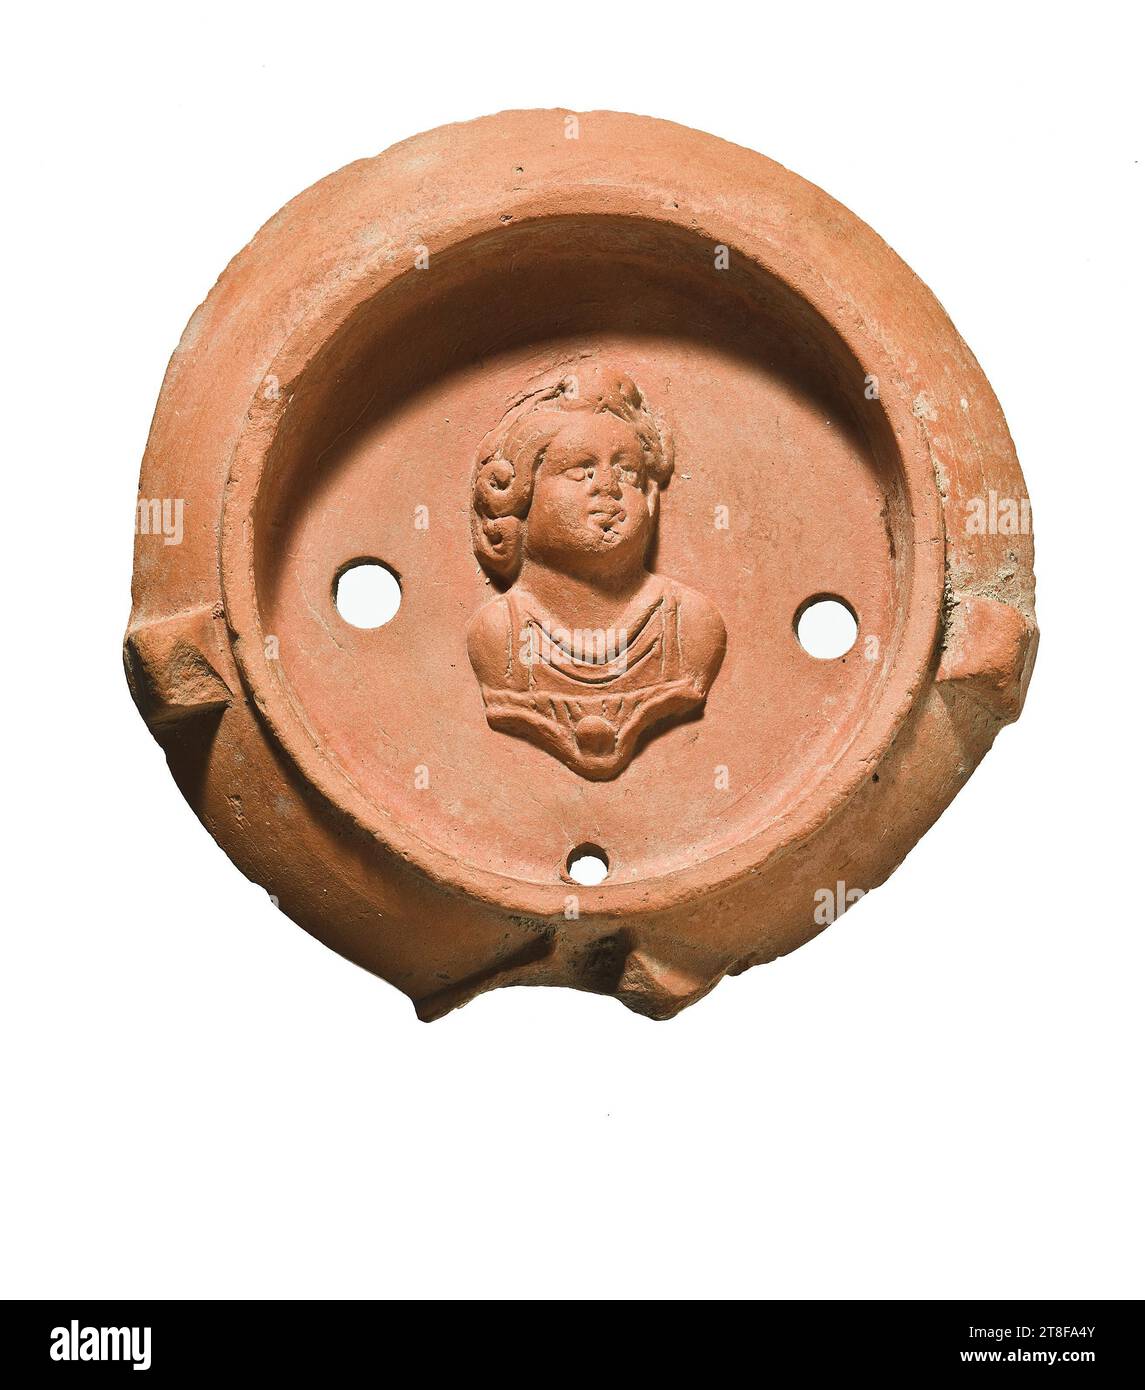 Lampe mit Büste eines Kindes (Cupid?), 70 - 100, Möbel, Lampe, gefeuert, modelliert, Höhe 7,8 cm, Töpferwaren, Keramik, römisch (753 v. Chr. - 476 Stockfoto